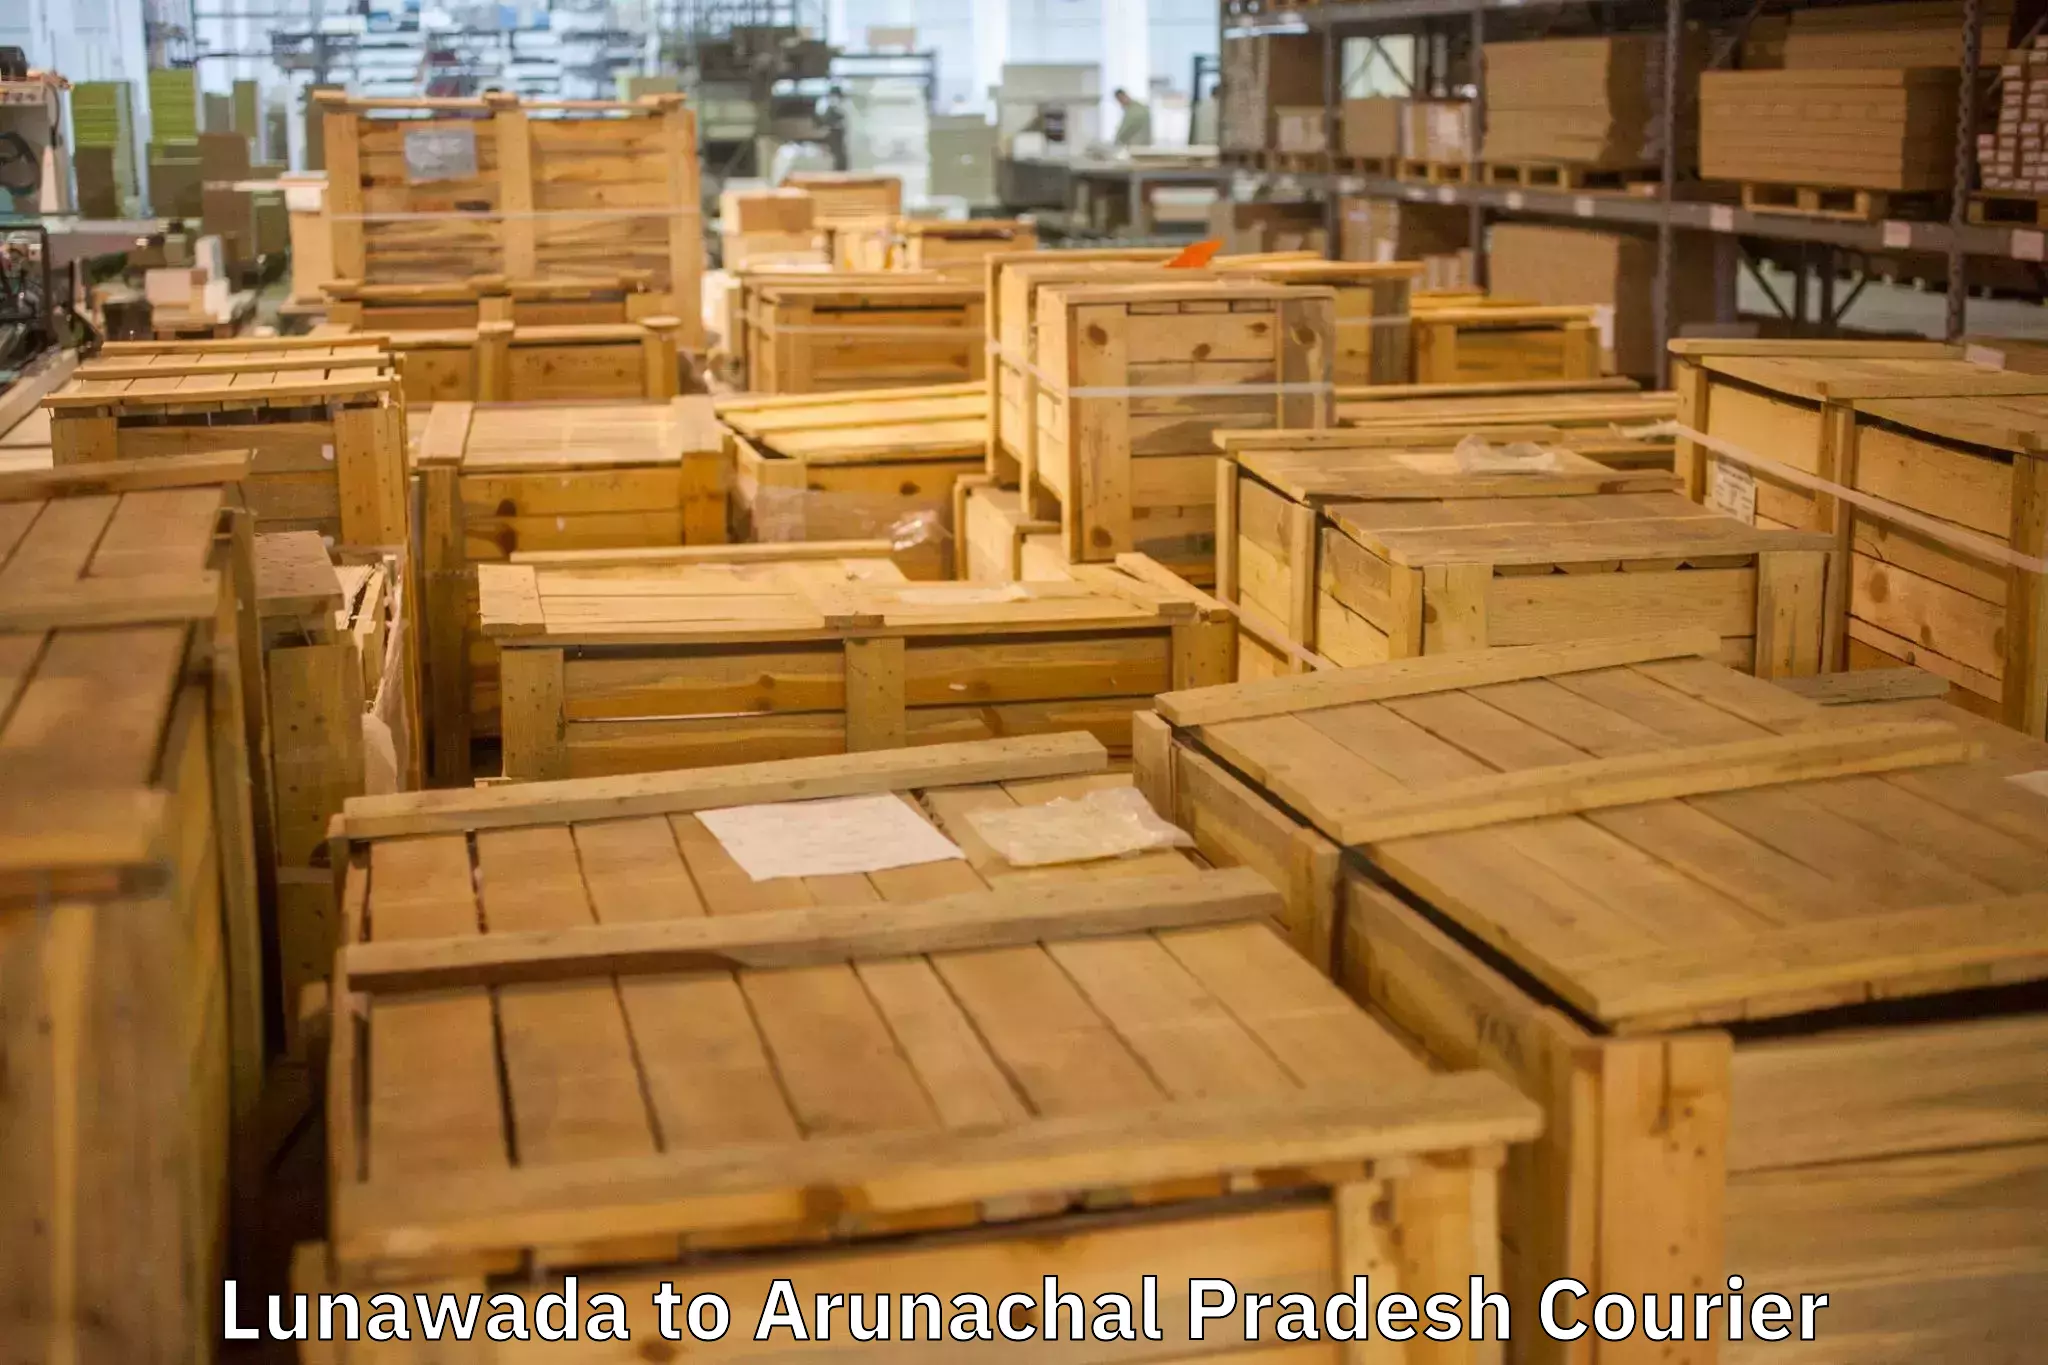 Efficient moving services Lunawada to Arunachal Pradesh